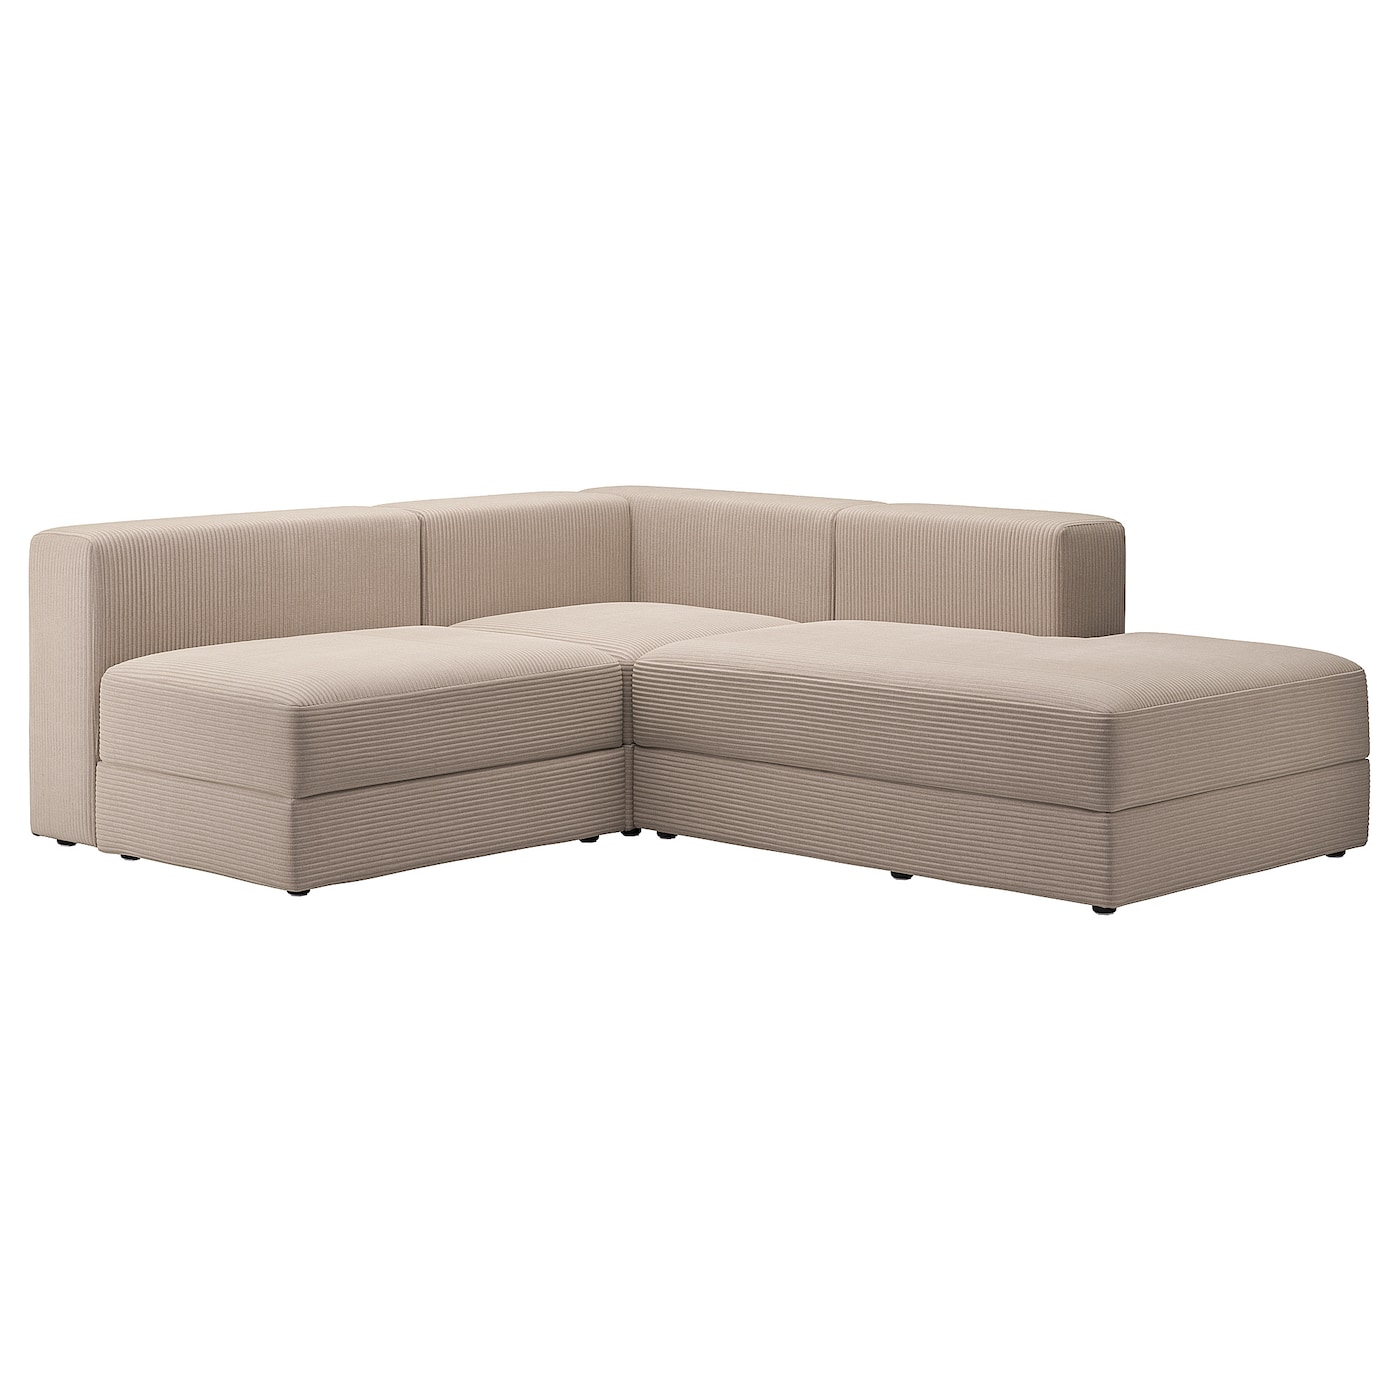 ДЖЭТТЕБО 2,5-местный модульный угловой диван-диван, правый/Самсала серый бежевый JÄTTEBO IKEA угловой модульный диван наполи 3 begie правый